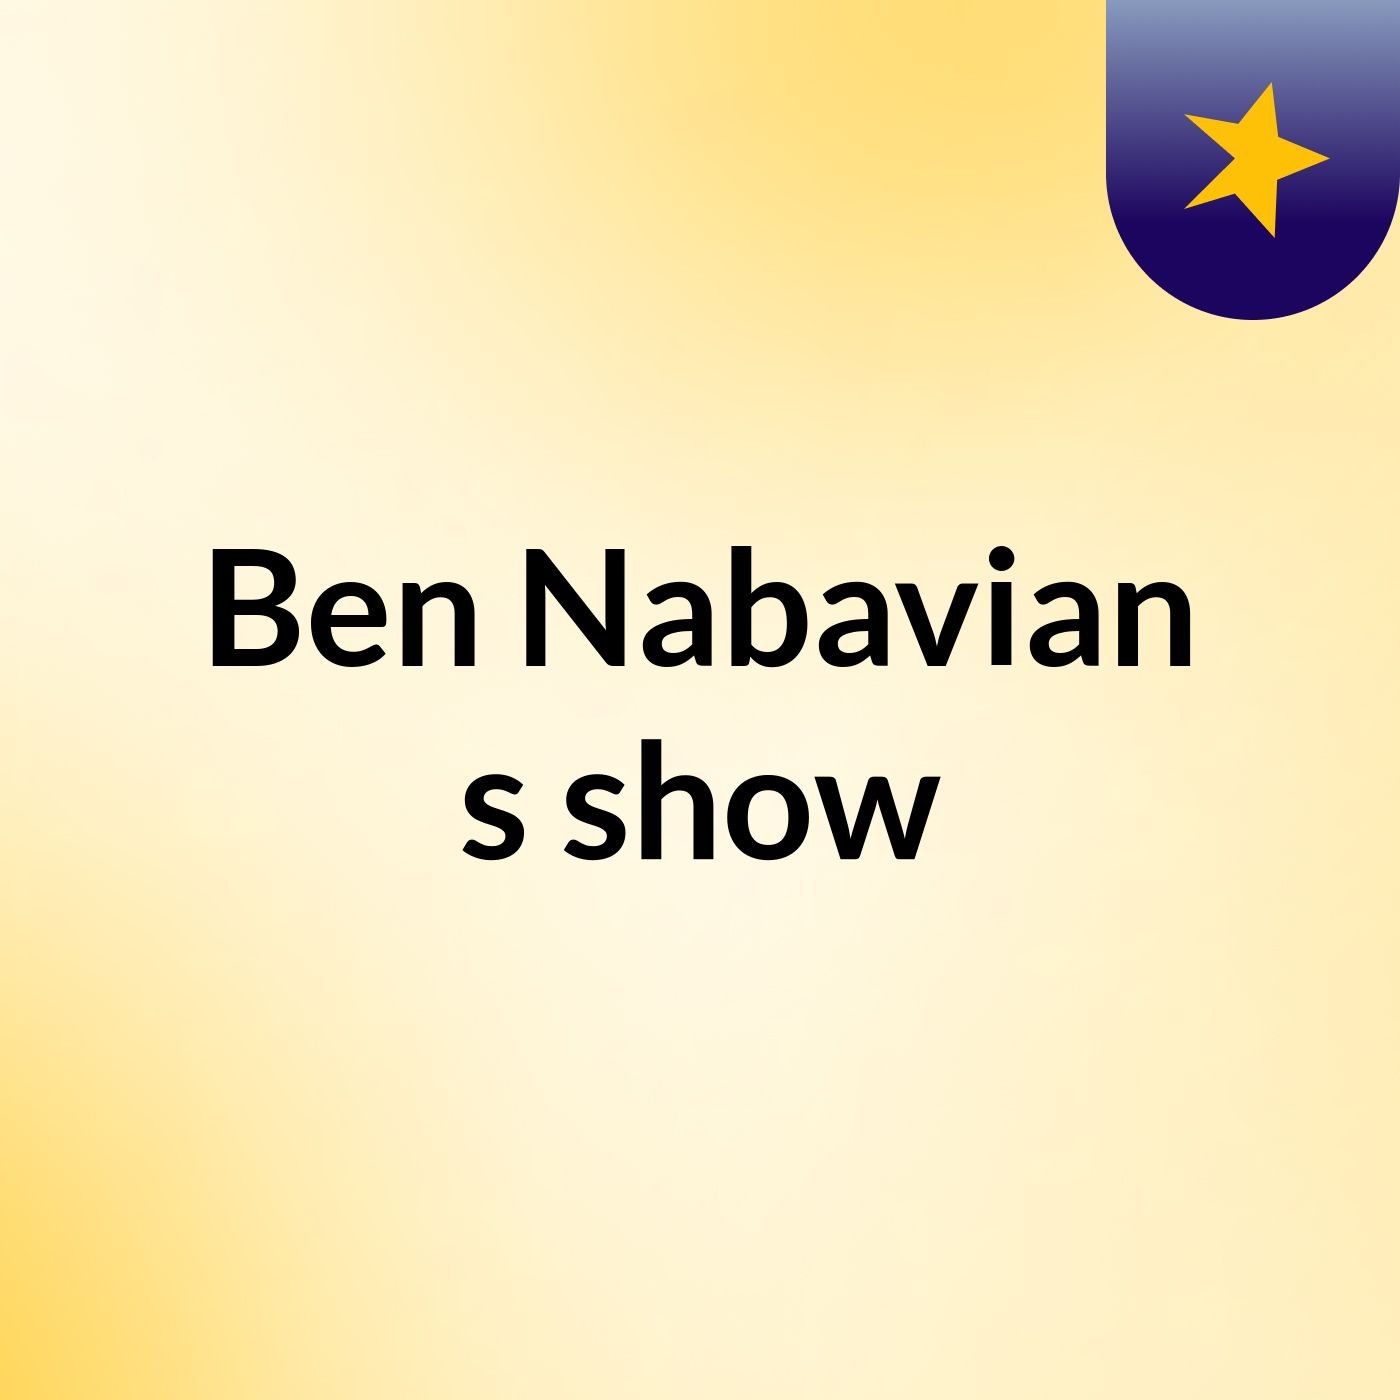 Ben Nabavian's show